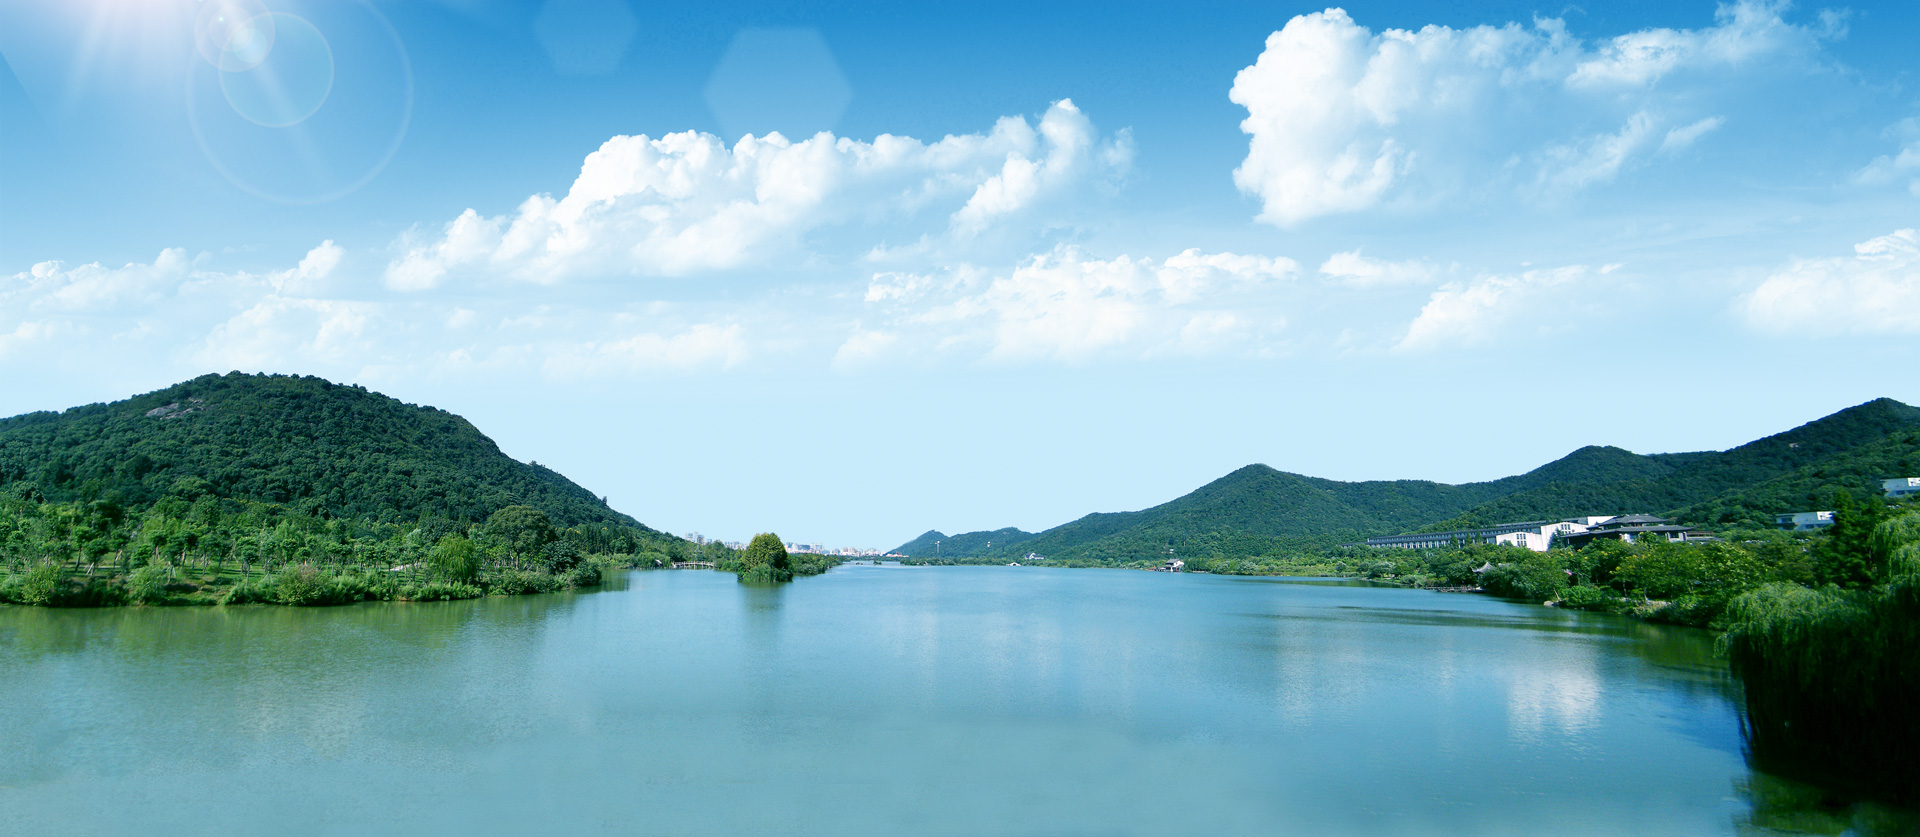 2020水环境治理前瞻论坛暨 中华环保联合会水环境治理专业委员会成立大会